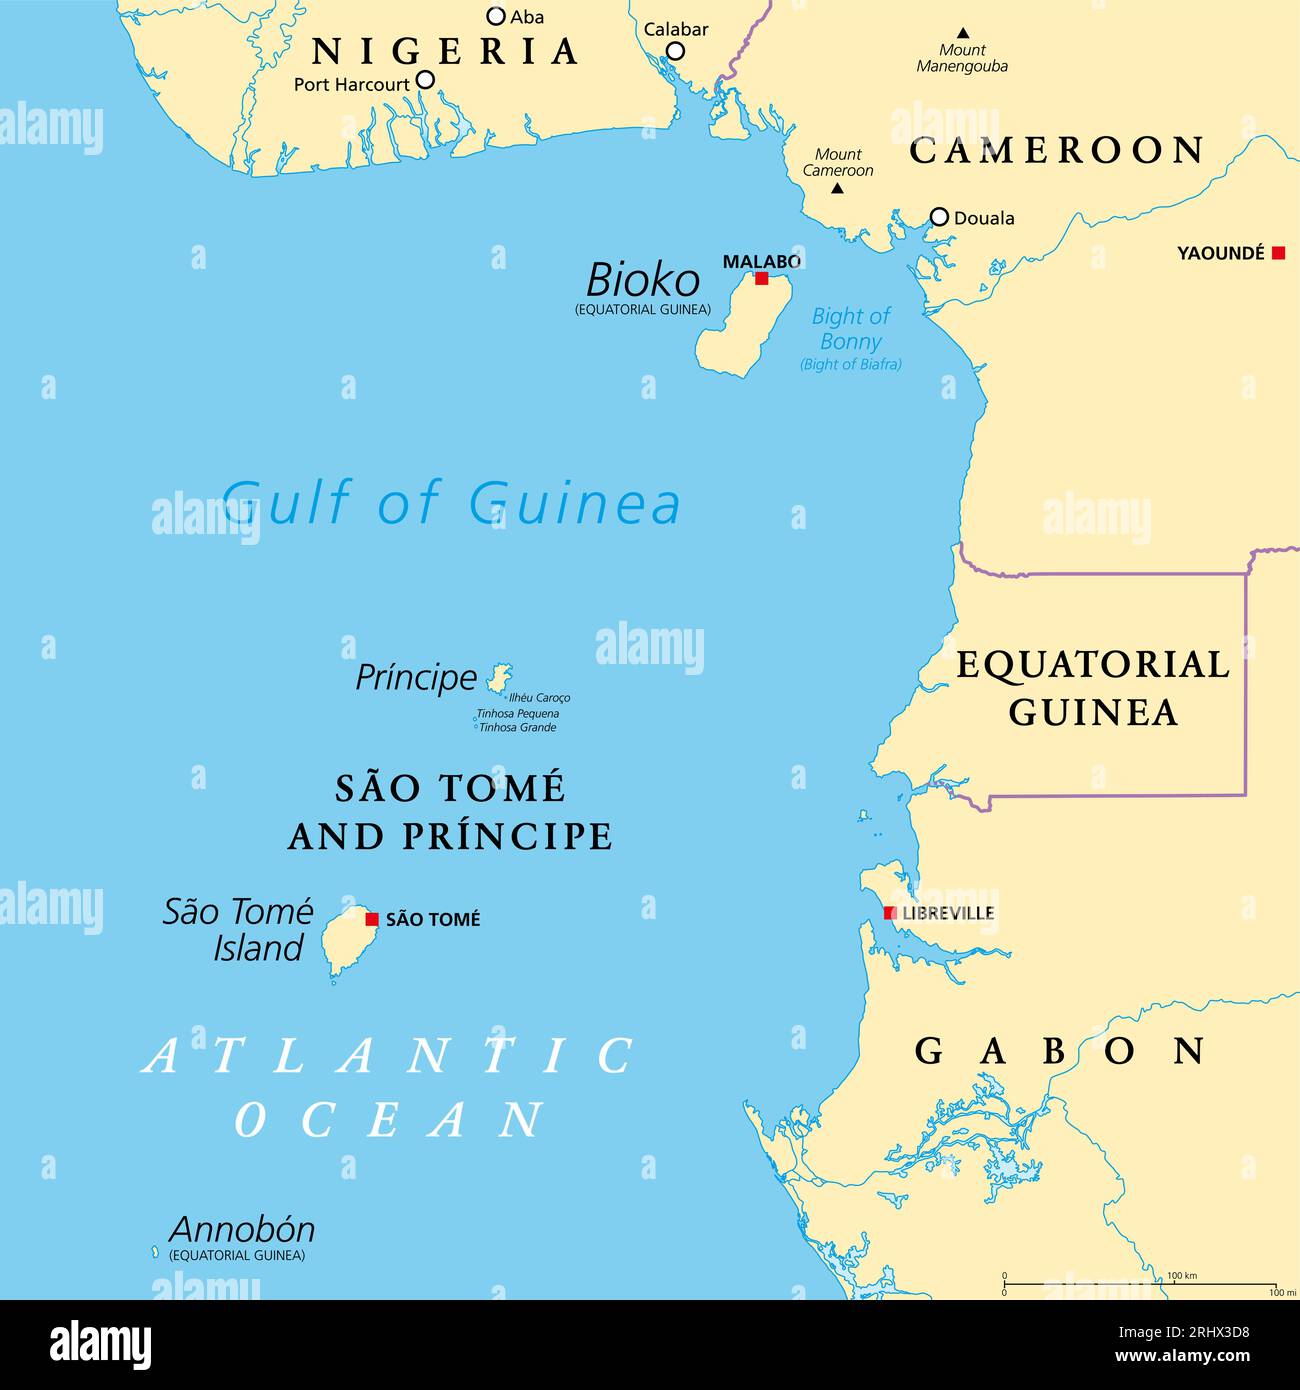 Ligne du Cameroun, chaîne d'îles volcaniques au large des côtes de l'Afrique de l'Ouest, carte politique. Longue chaîne de volcans dont des îles du golfe de Guinée. Banque D'Images